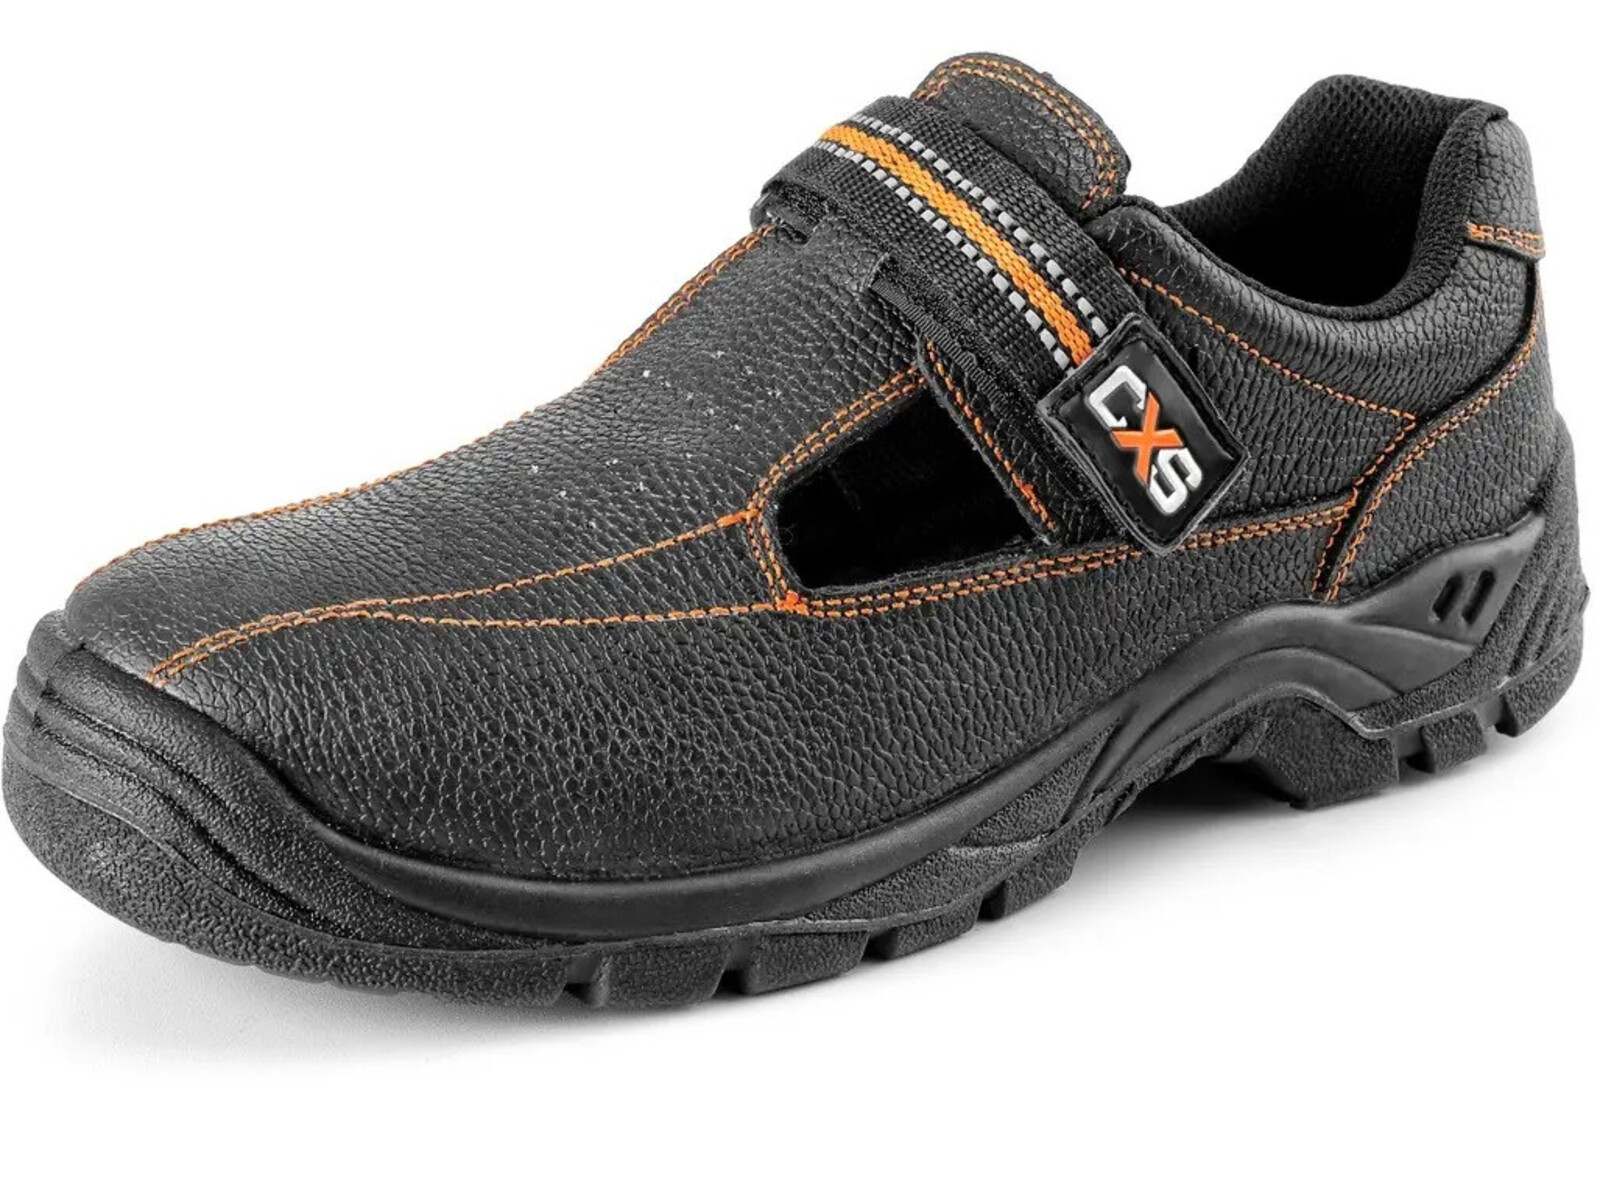 Bezpečnostné sandále CXS Stone Nefrit S1 SRC - veľkosť: 46, farba: čierna/oranžová